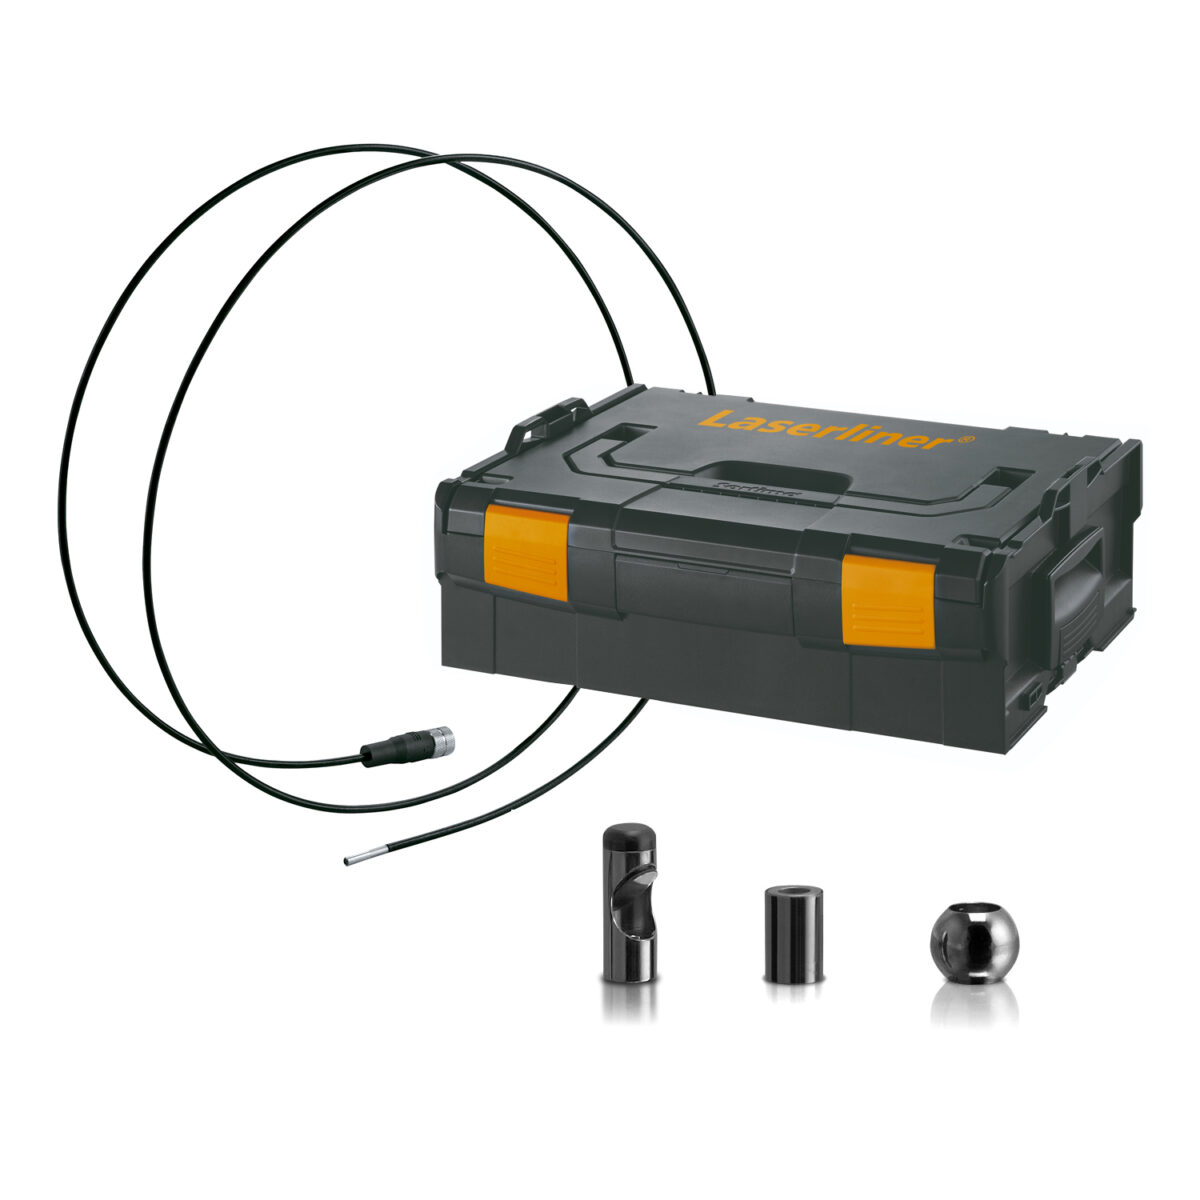 Laserliner FlexiCamera - scope of delivery